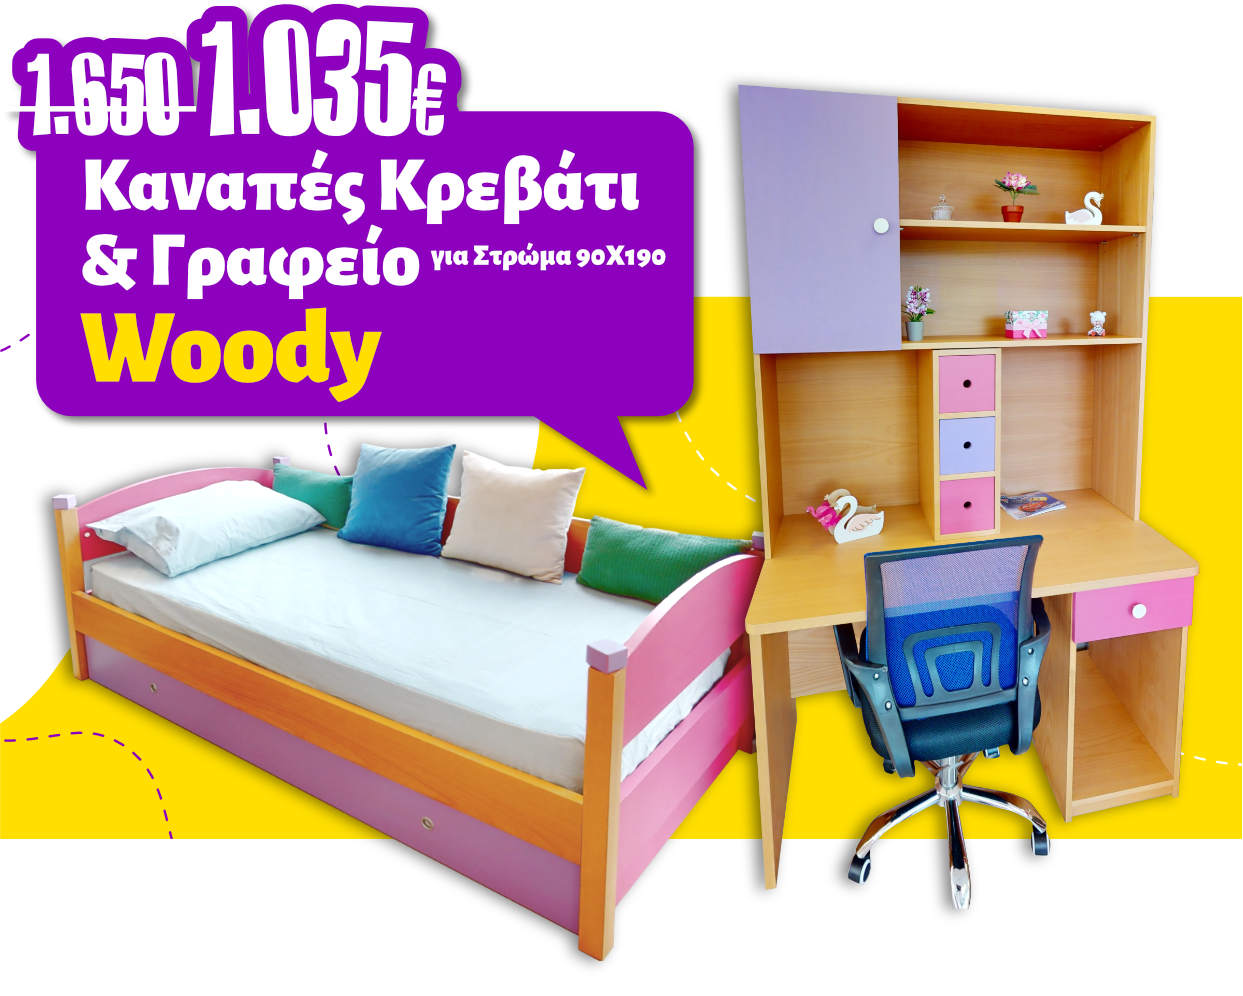 Προσφορά Καναπές Κρεβάτι Woody για Στρώμα 90Χ190 & Γραφείο από 1.650€ - 1.035€.